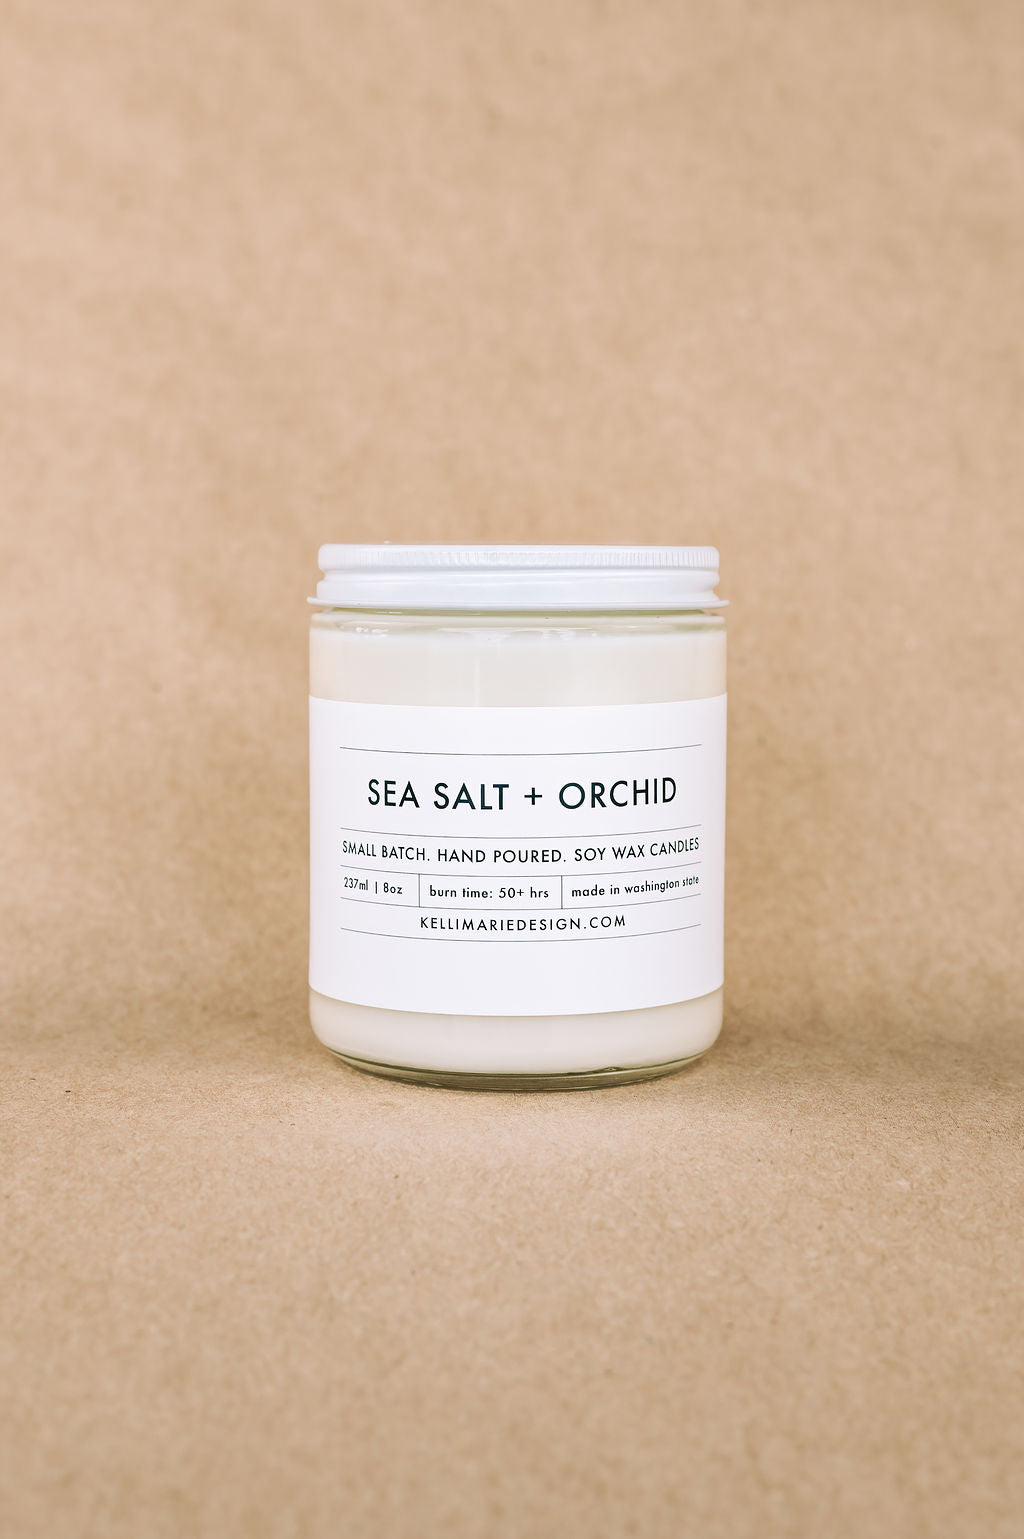 SEA SALT + ORCHID